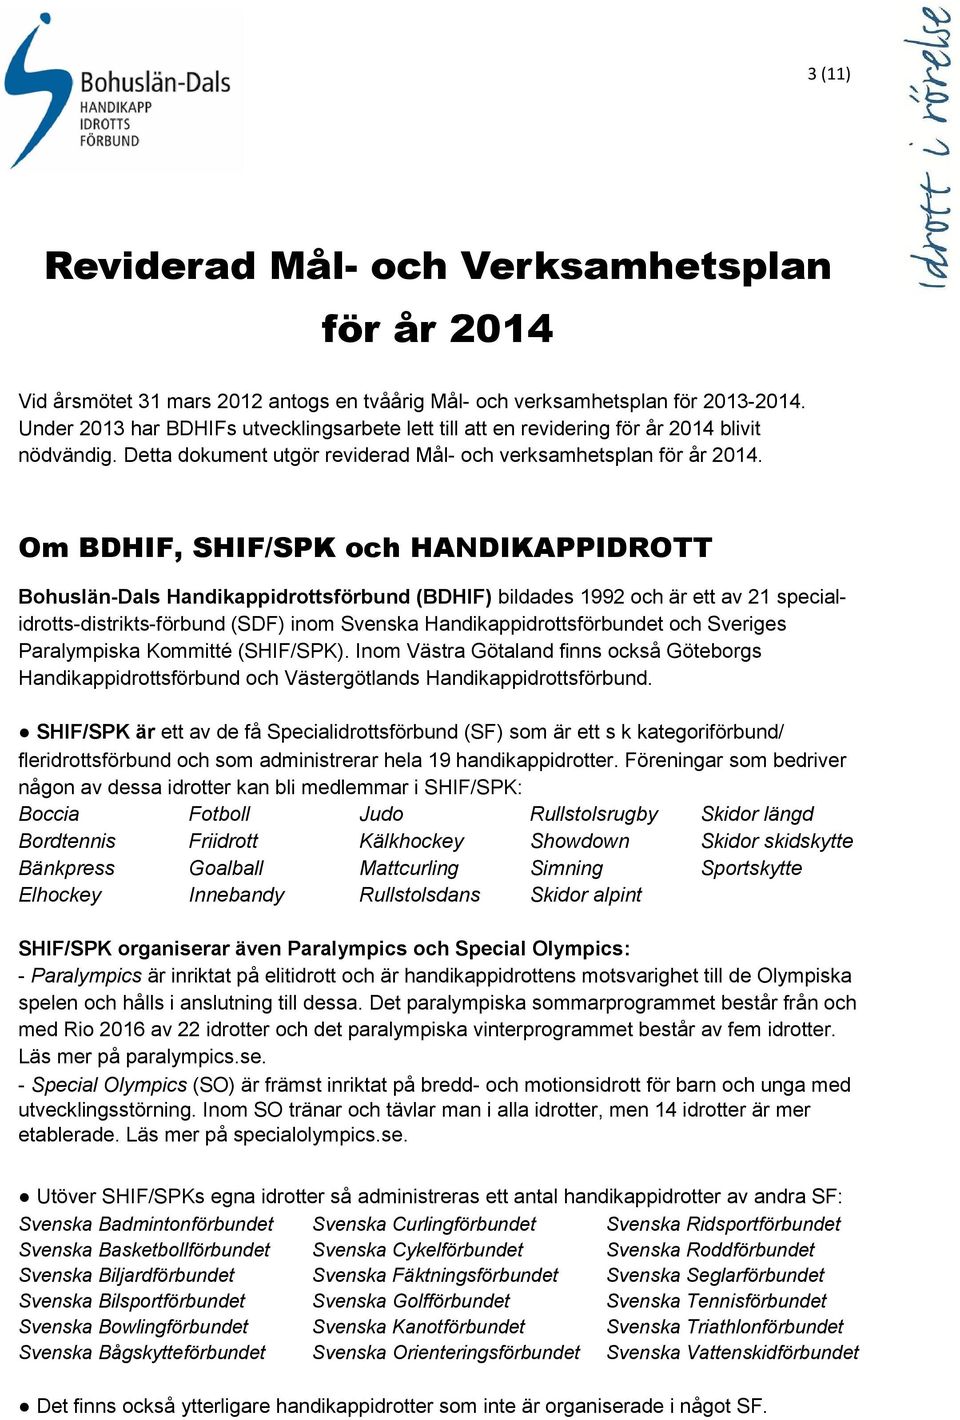 Om BDHIF, SHIF/SPK och HANDIKAPPIDROTT Bohuslän-Dals Handikappidrottsförbund (BDHIF) bildades 1992 och är ett av 21 specialidrotts-distrikts-förbund (SDF) inom Svenska Handikappidrottsförbundet och